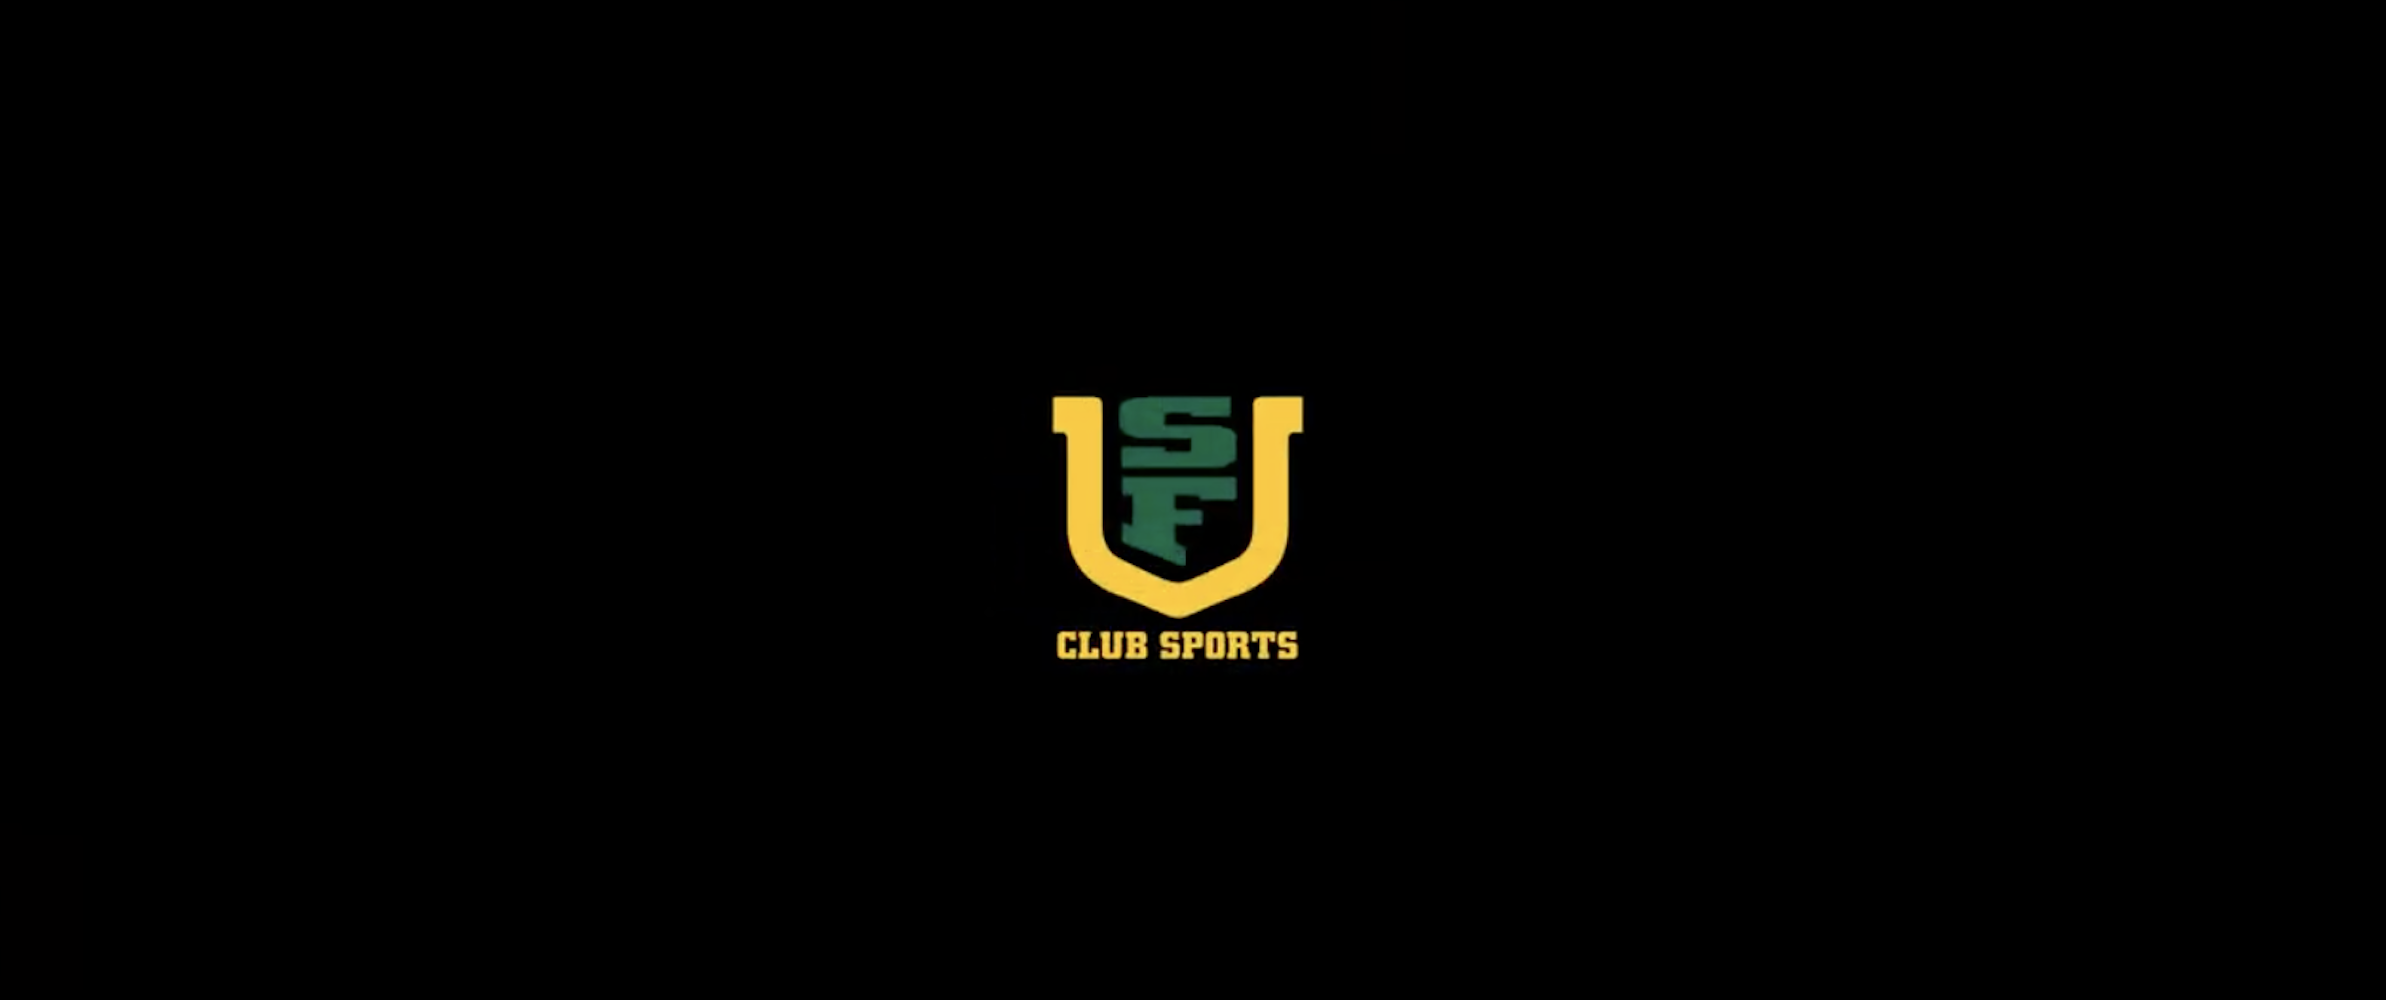 USF Club Sports logo